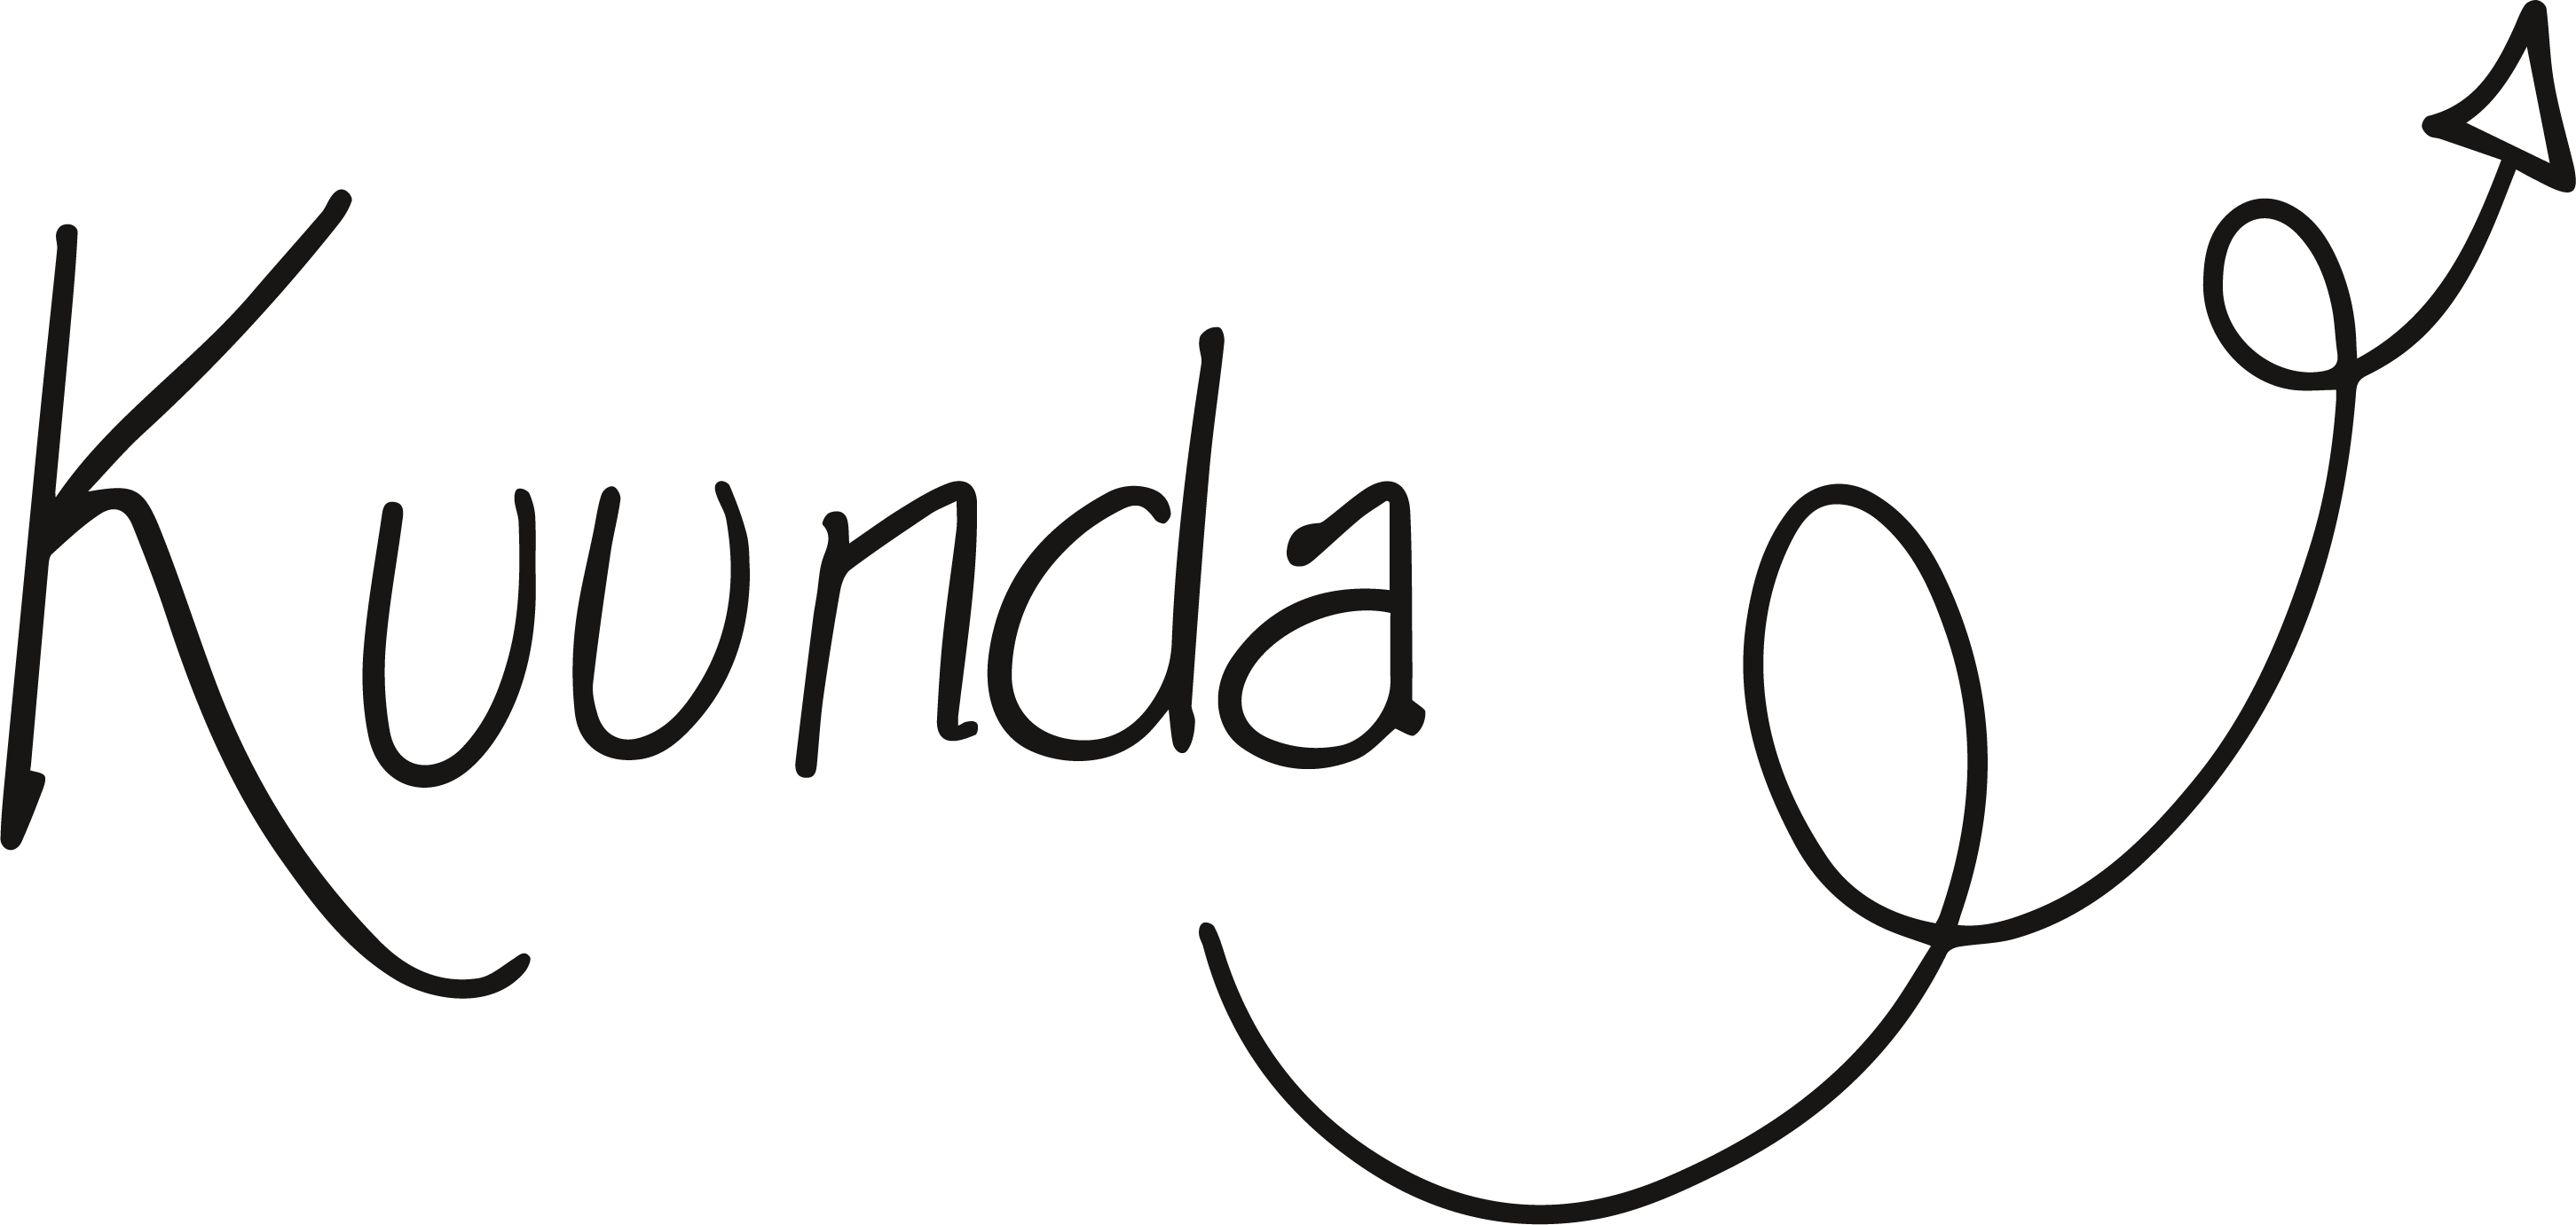 Kuunda